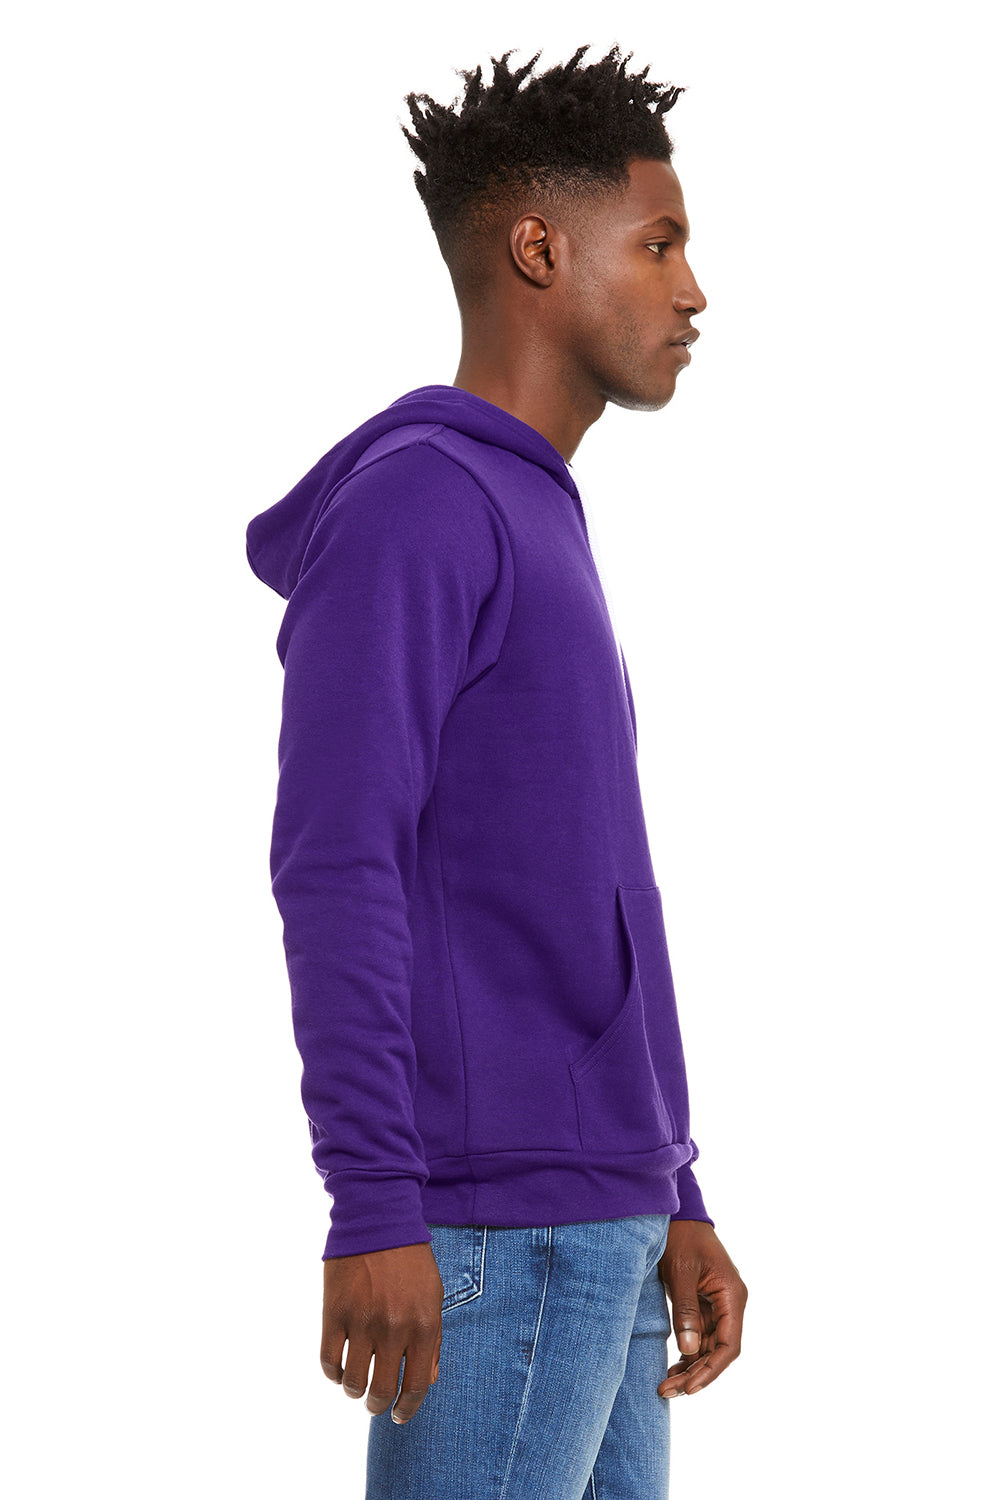 Bella + Canvas BC3719/3719 Mens Sponge Fleece Hooded Sweatshirt Hoodie Team Purple Model Side